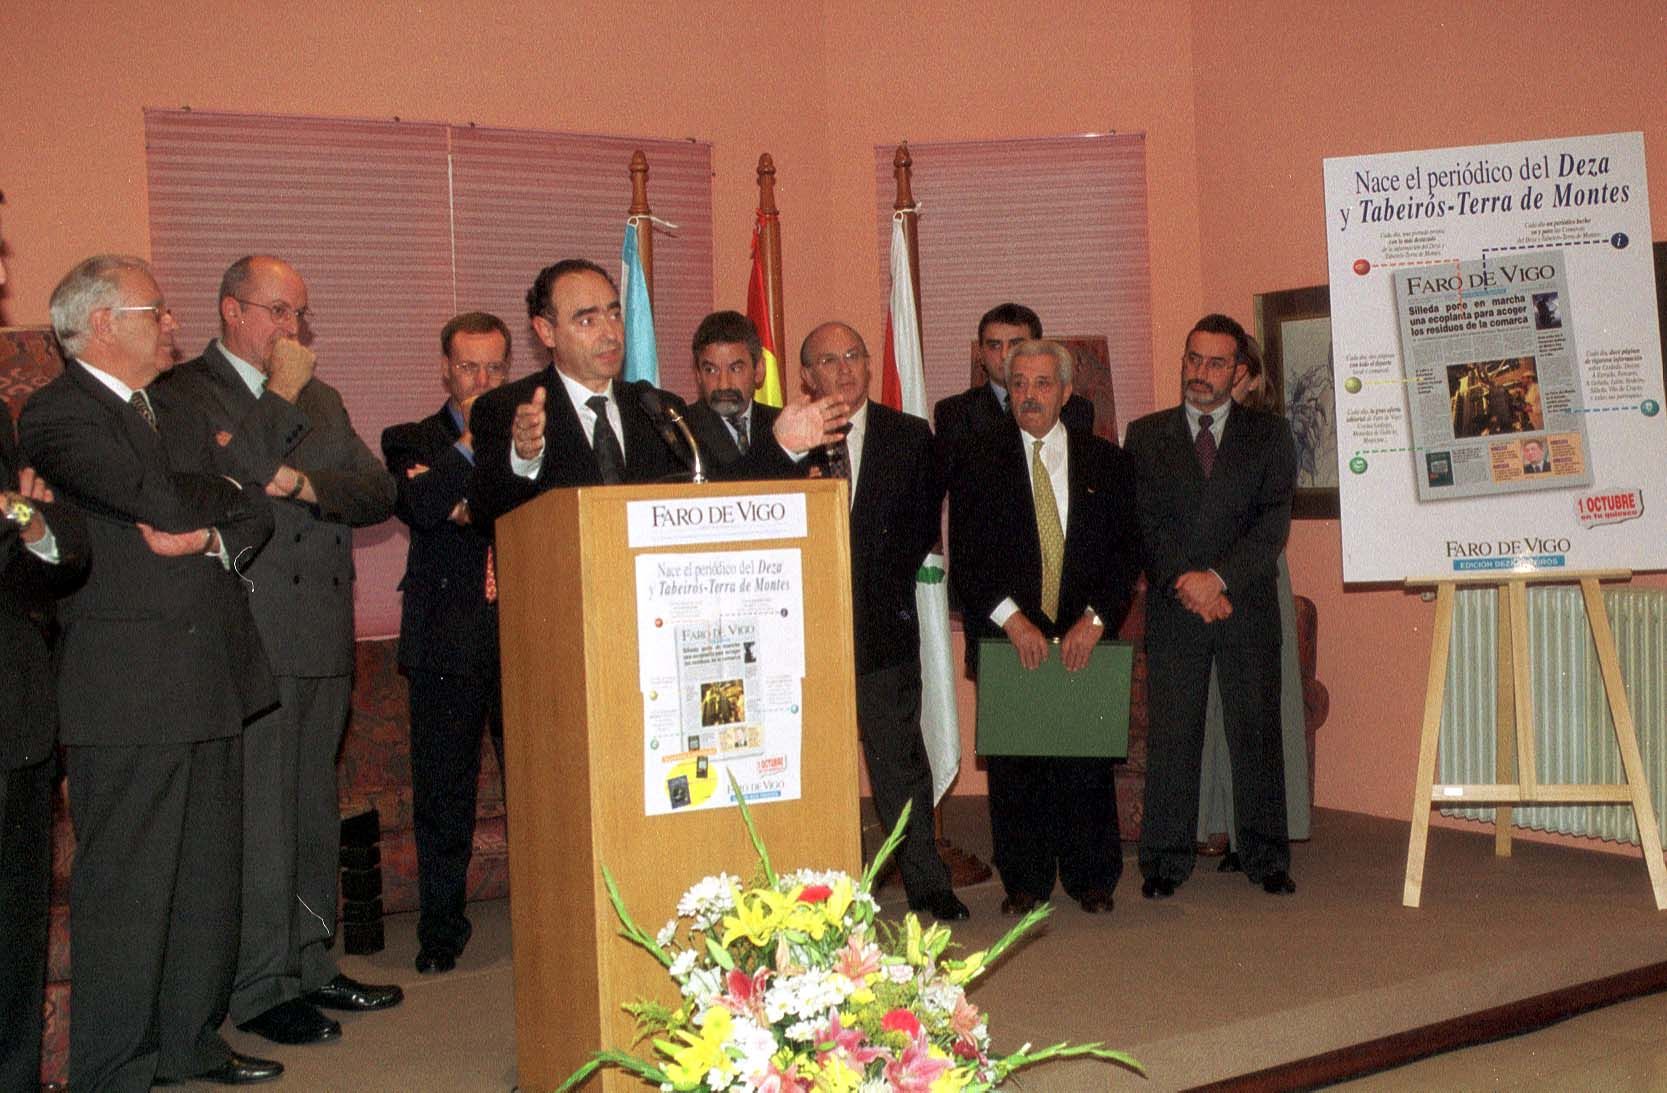 Ceferino de Blas y diversas autoridades durante la presentación de la edición de Faro de Vigo del Deza y Tabeirós - Terra de Montes Magar en 1999.jpg